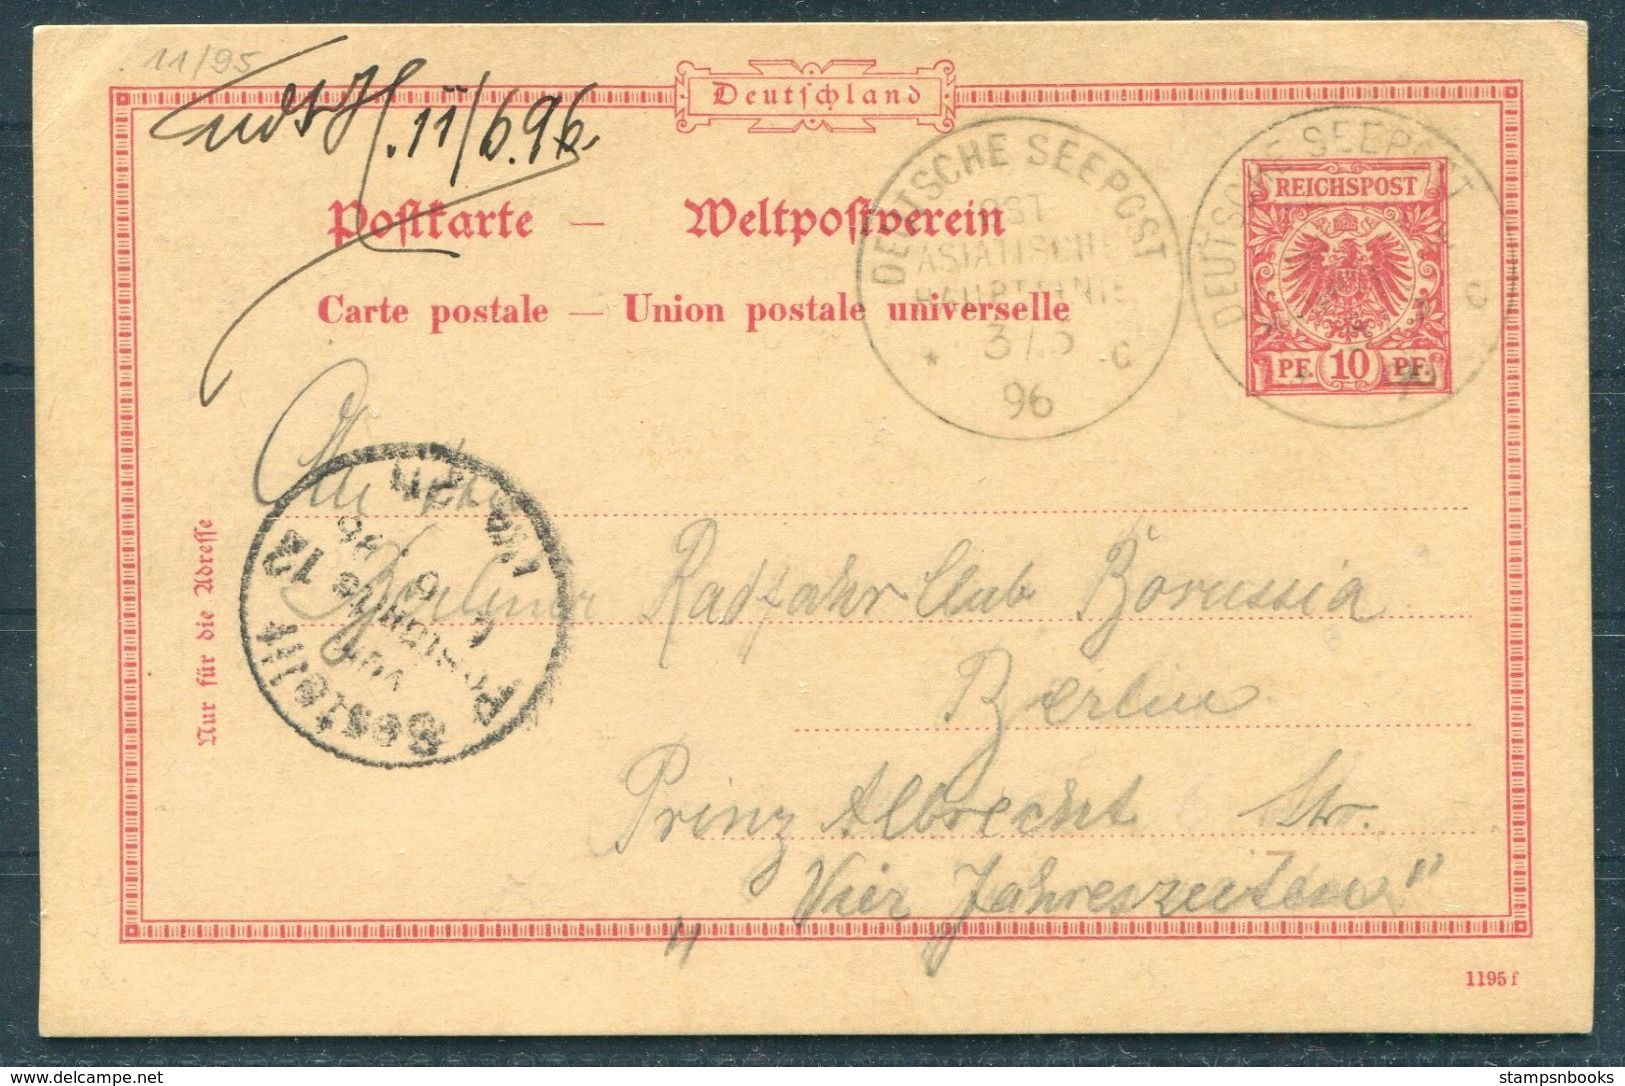 1896 China Germany Stationery Postcard, Deutsche Seepost - Berlin. Ship OSTASIATISCHE HAUBTLINIE - Lettres & Documents